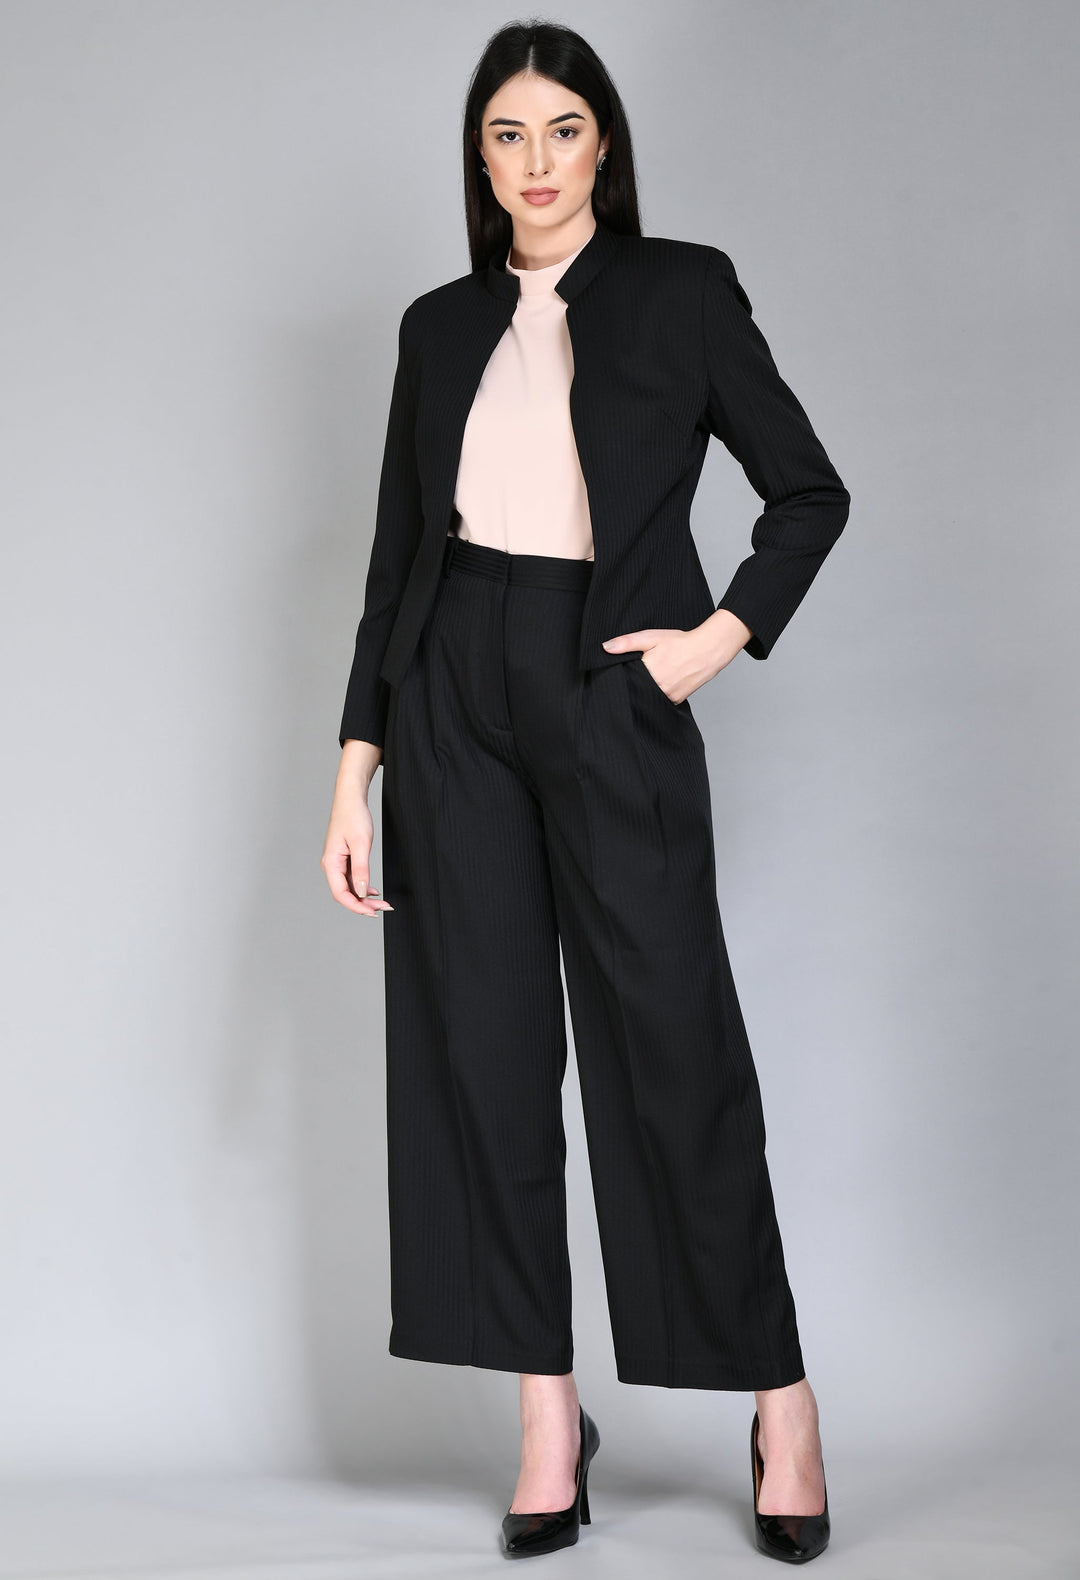 Black-Cotton-Blend-Focus-Striped-Short-Blazer-Pant-Suit